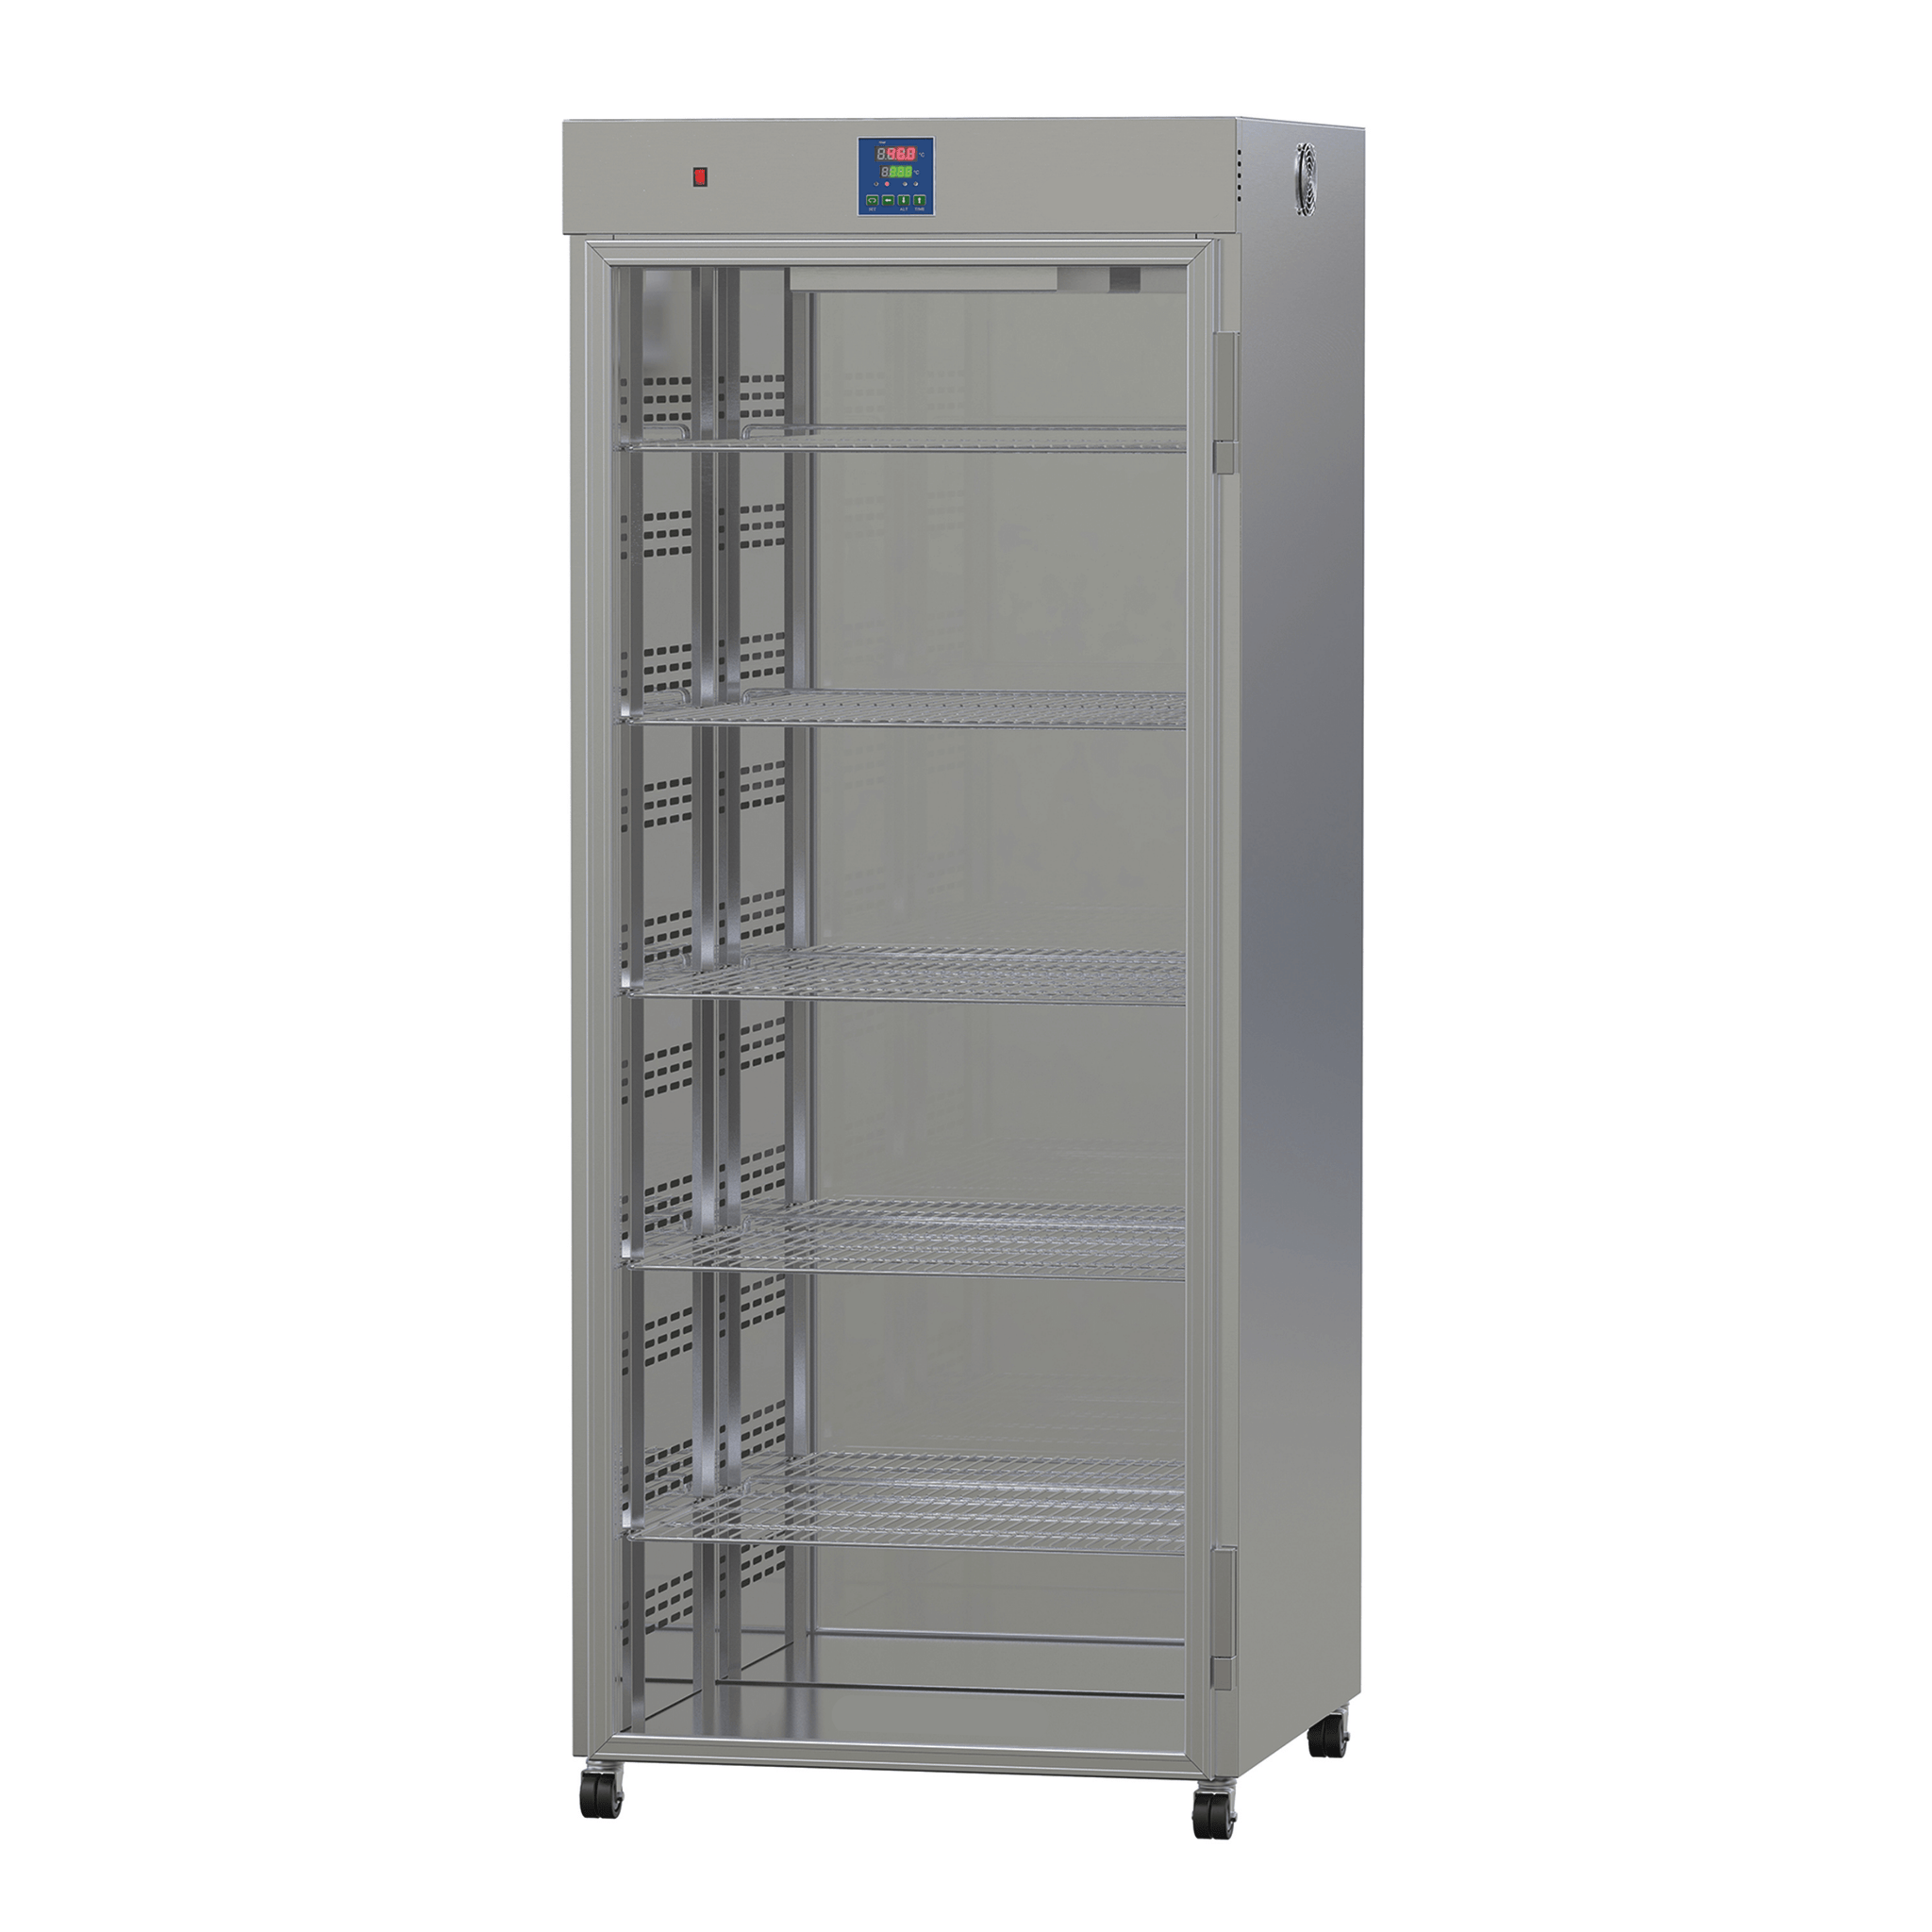 Fluid Warmer- 5 Shelves, 750 X 700 X 1800 mm